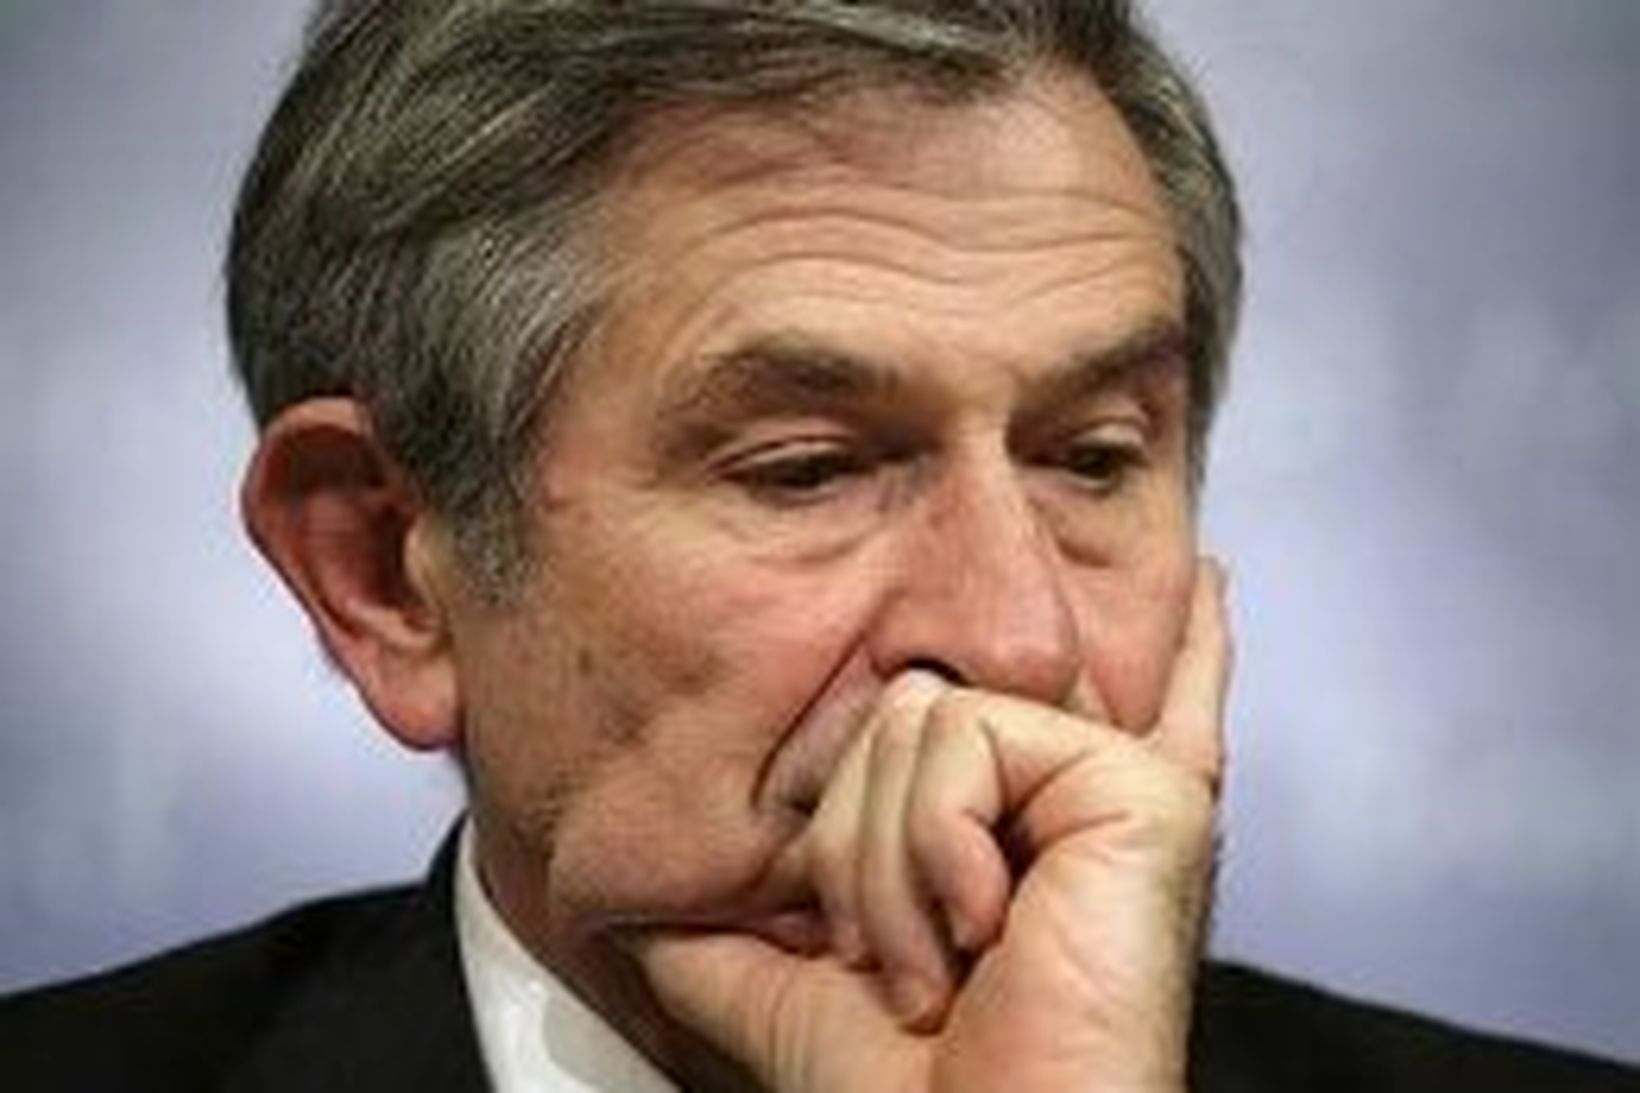 Paul Wolfowitz hefur verið harðlega gagnrýndur að undanförnu.